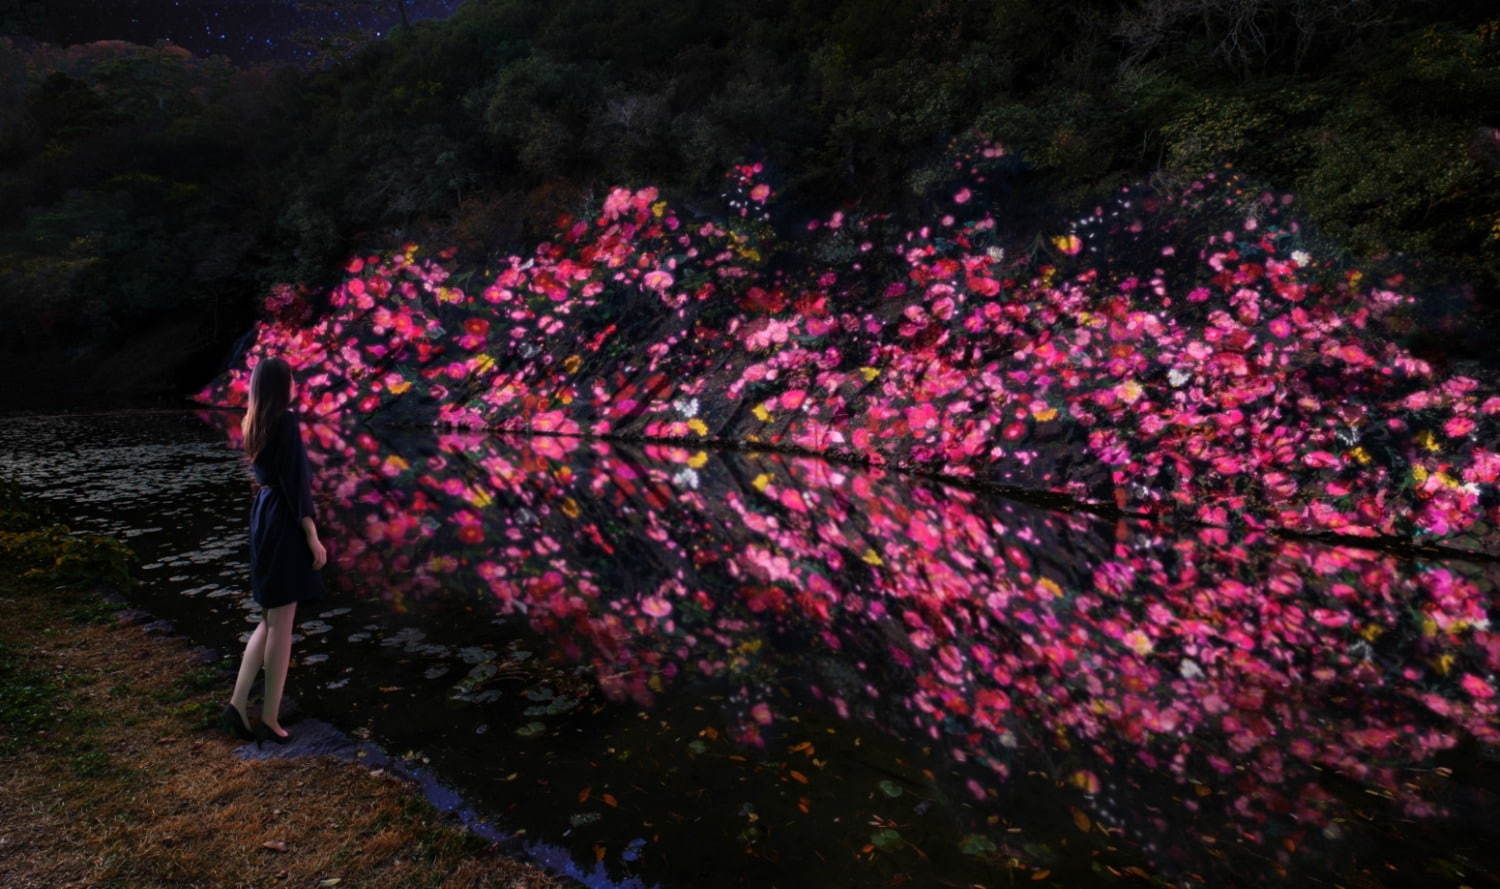 増殖する生命の石壁 - 紫雲山 / Ever Blossoming Life Rock Wall - Mt. Shiun
teamLab, 2020, Digitized Nature, Sound: Hideaki Takahashi